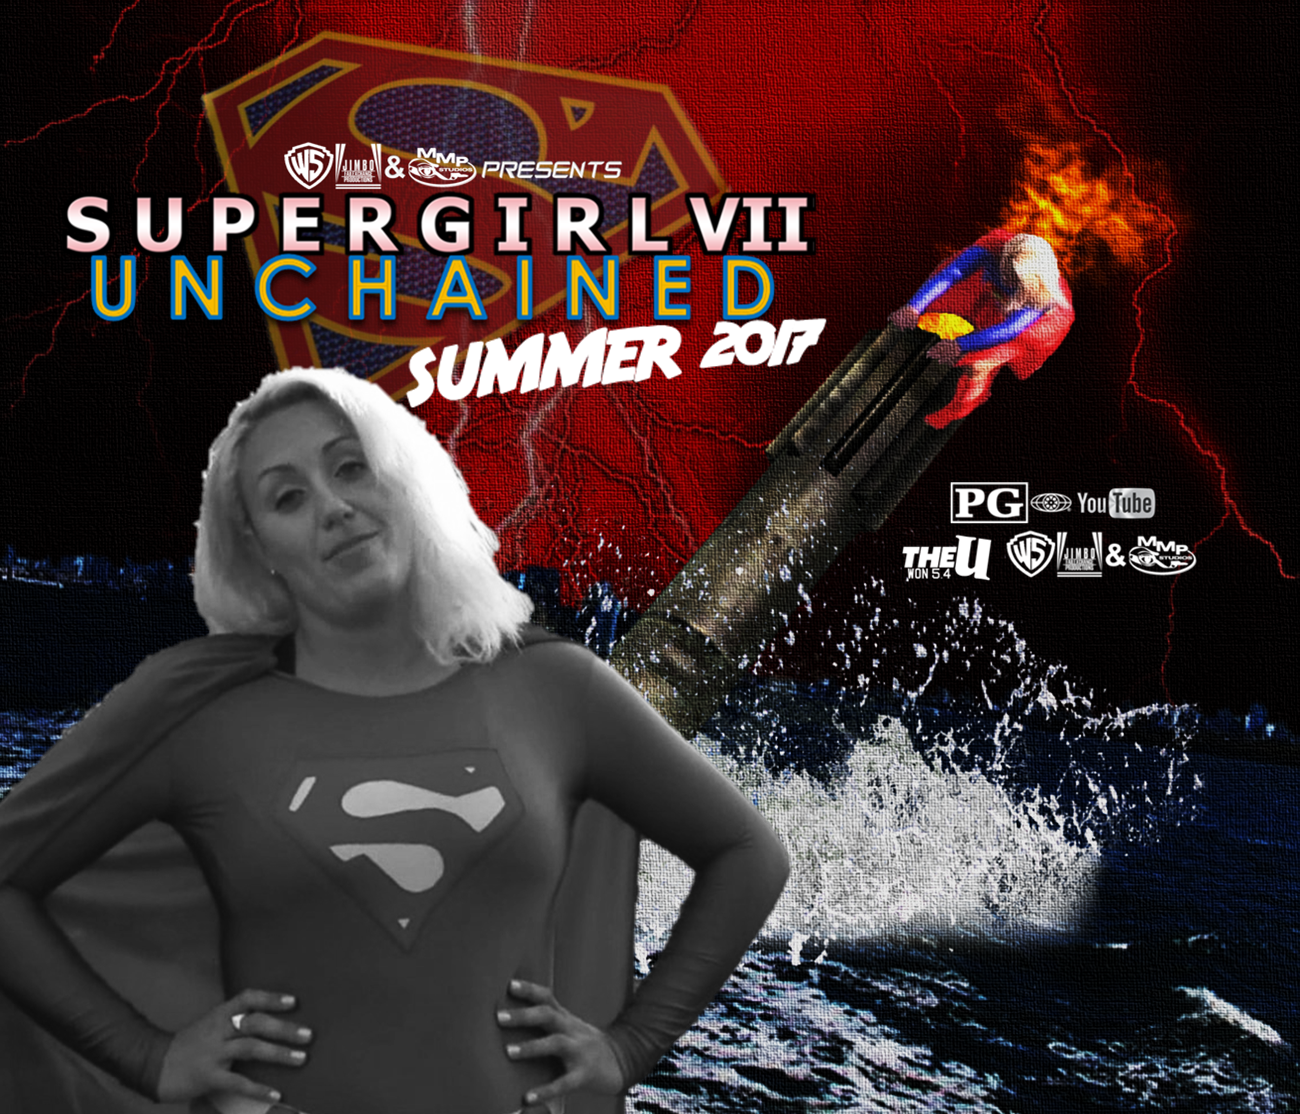 supergirl7misslekayceesummerposter.png